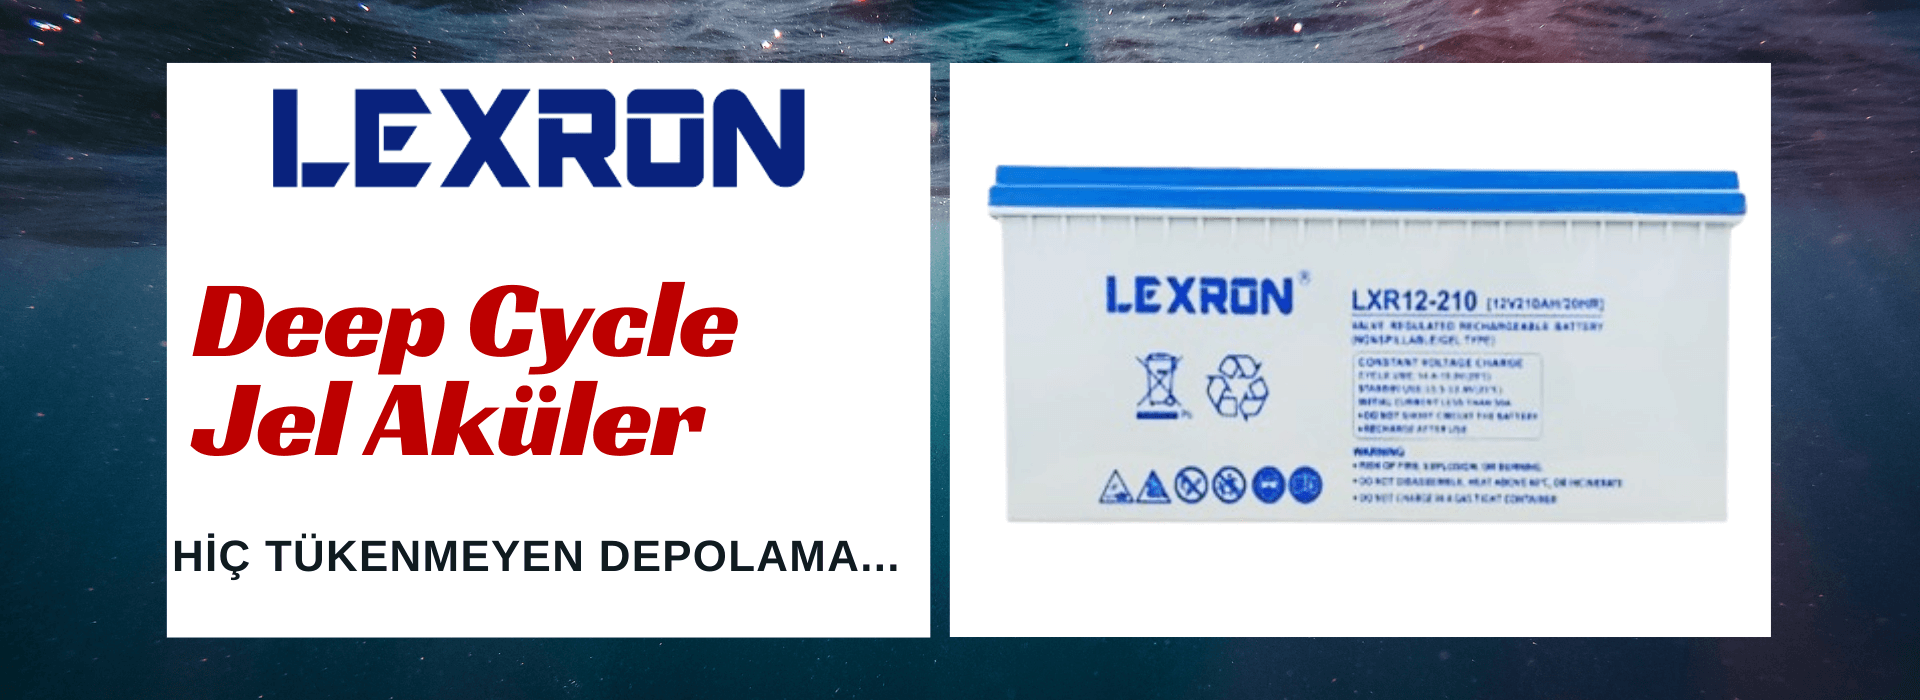 Lexron Deep Cycle Jel Aküler